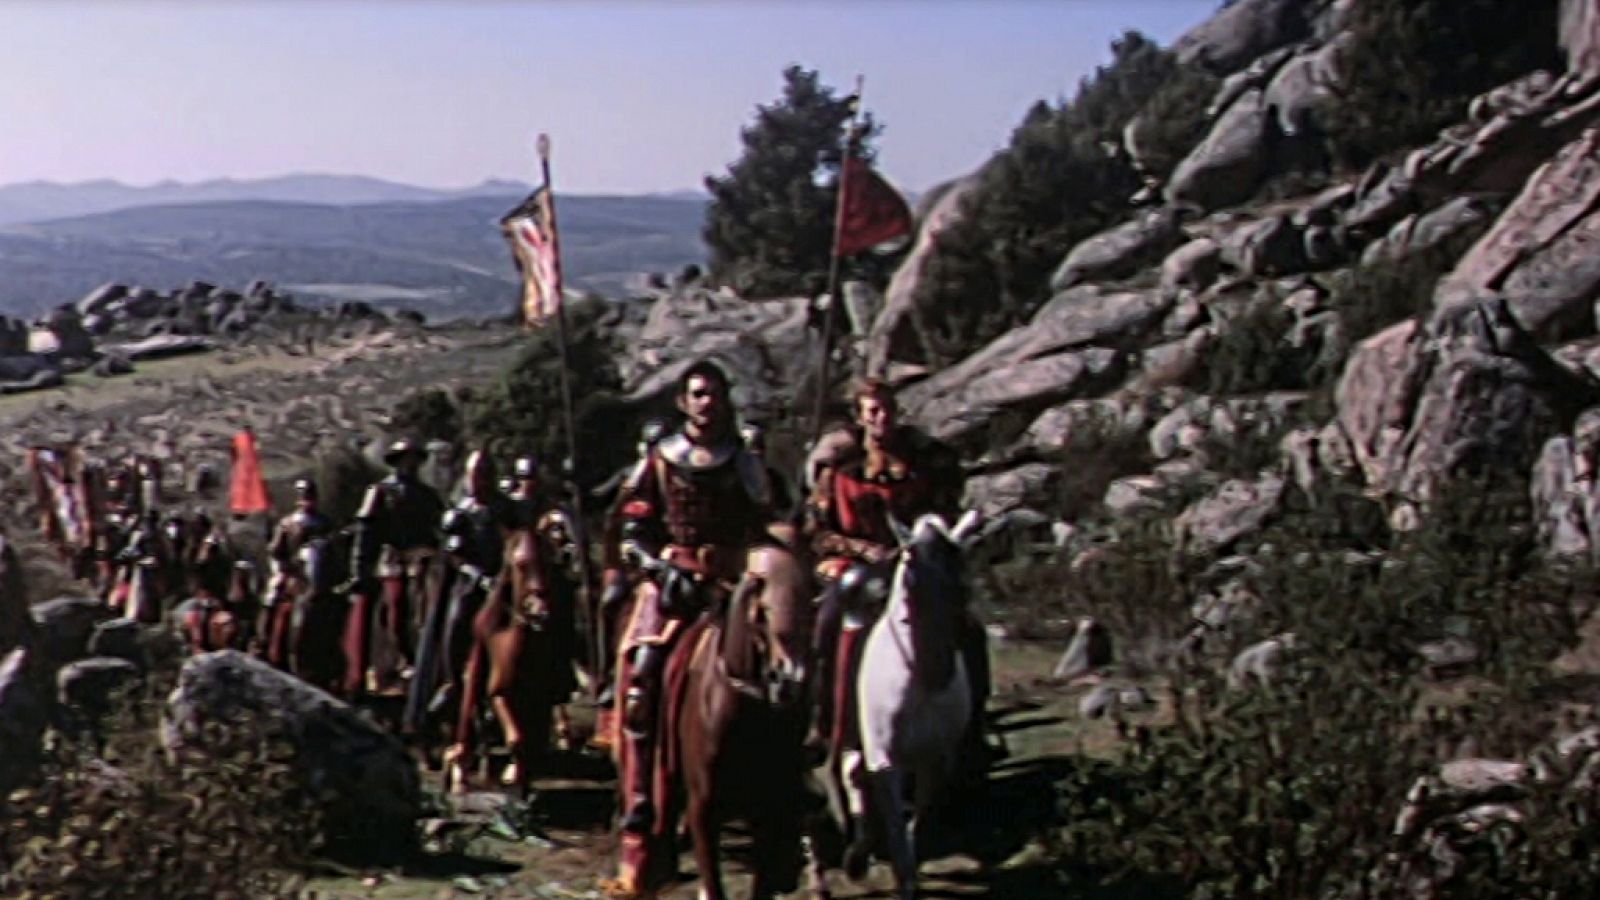 Días de cine clásico - El Cid (presentación)